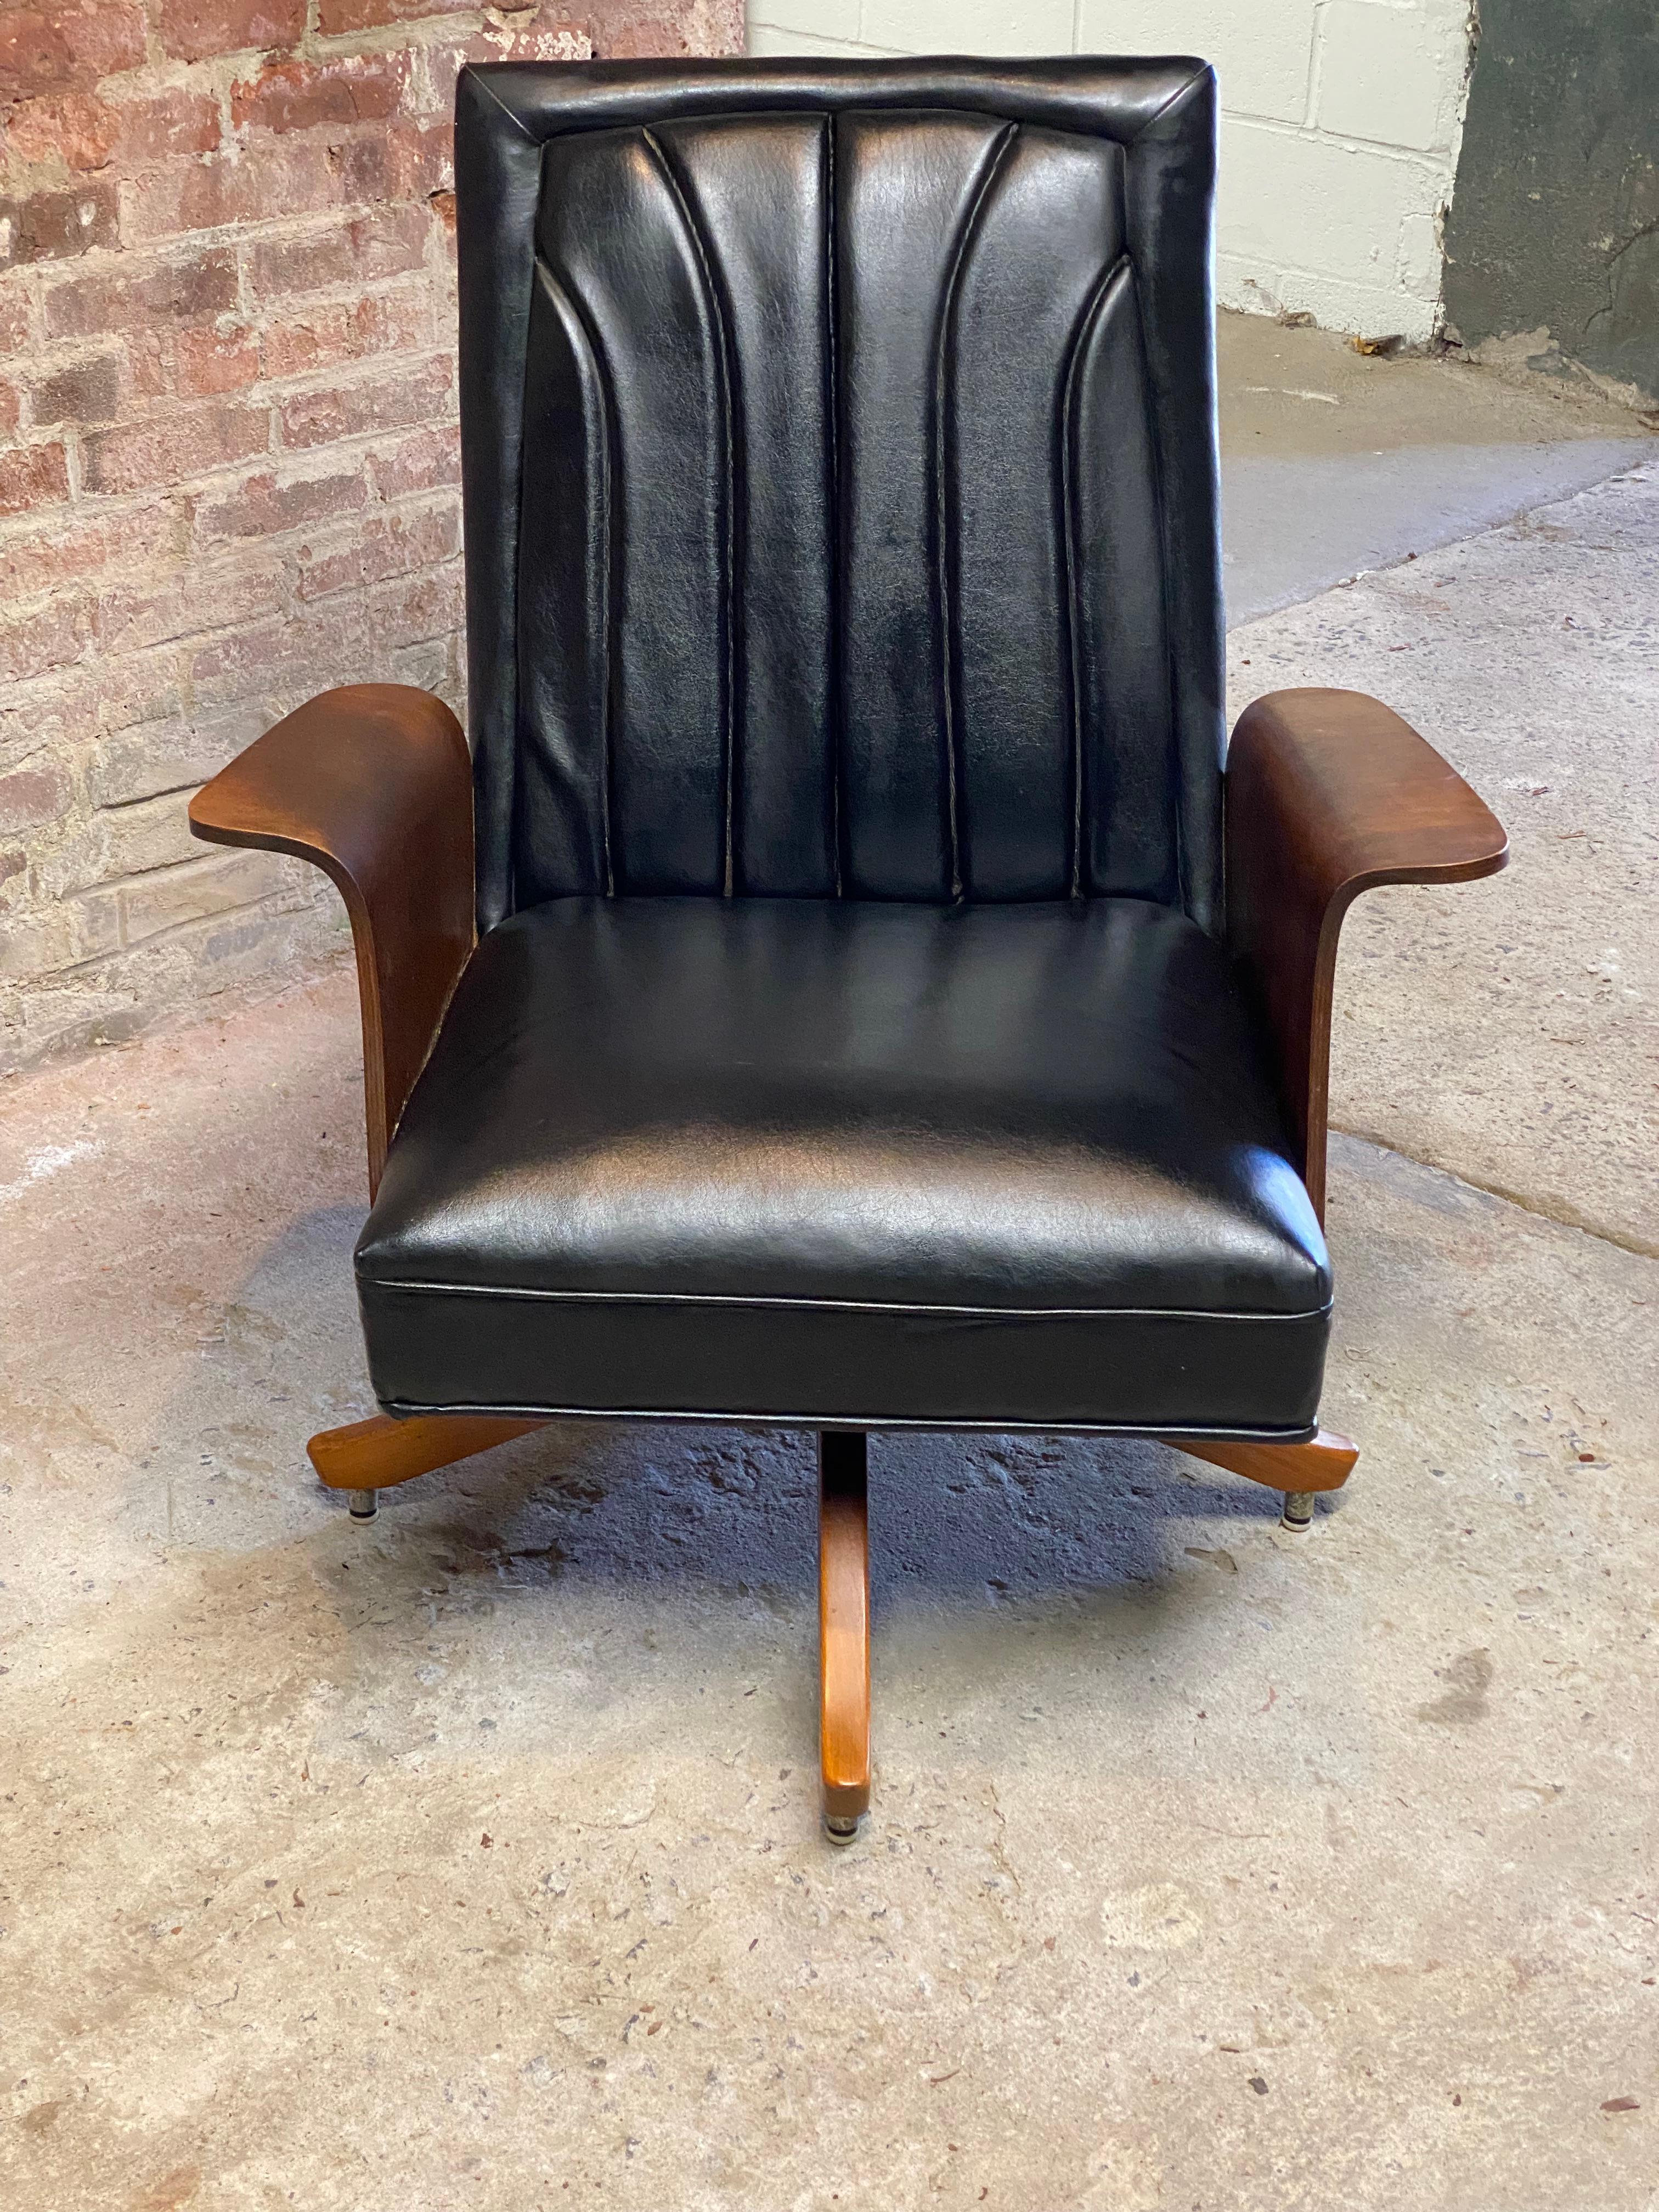 Une belle chaise de salon pivotante en bois courbé et dossier cannelé, recouverte de vinyle noir, attribuée à Miller Murphy, Inc. La chaise pivote et a un petit effet de rebond relaxant. Pieds en bois légèrement incurvés et profilés. Confortable et